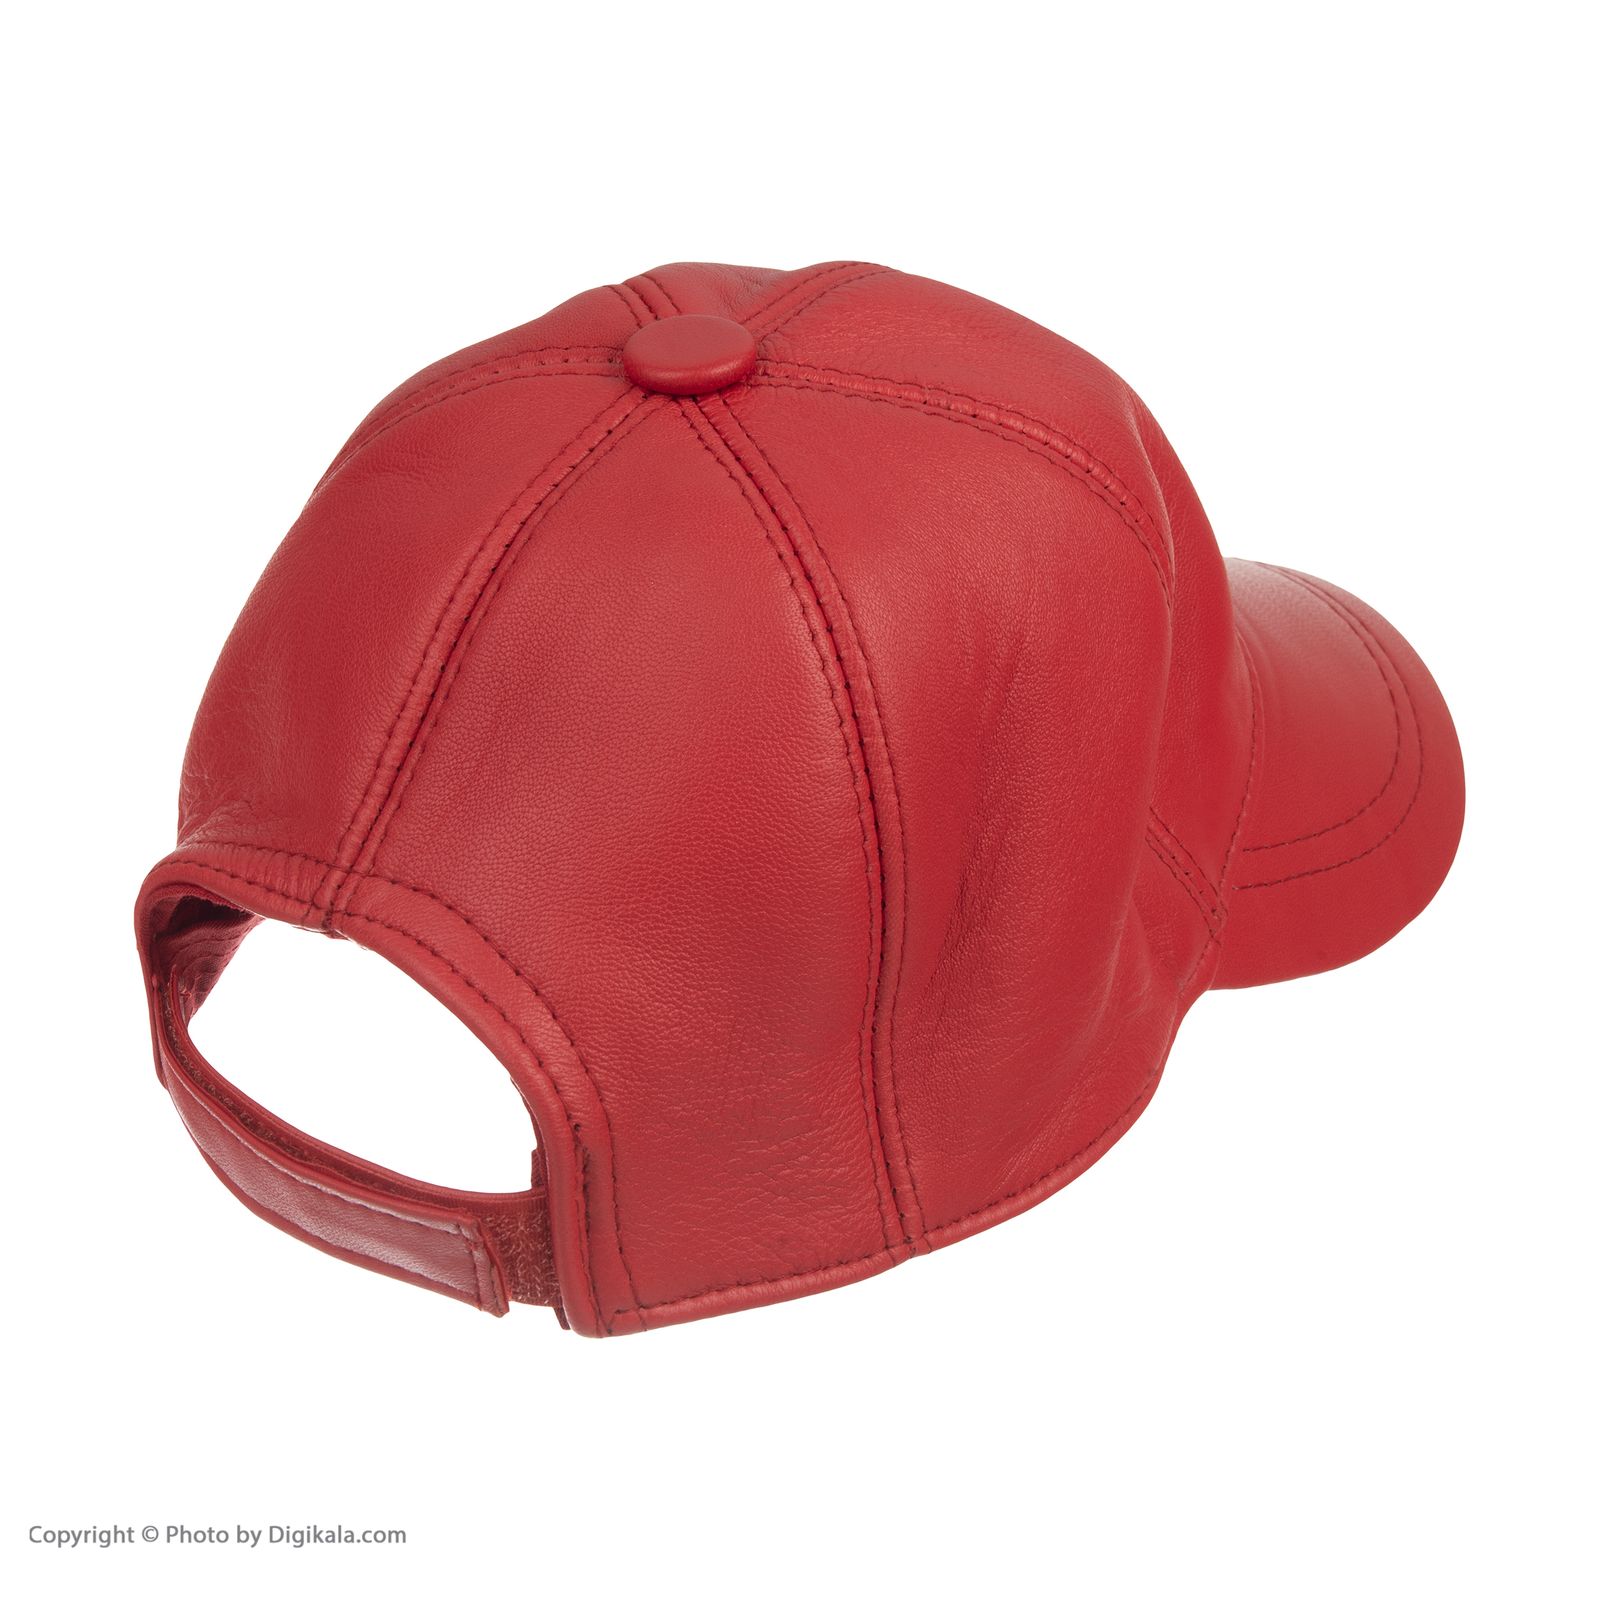 کلاه شیفر مدل 8701a09 - قرمز - 4